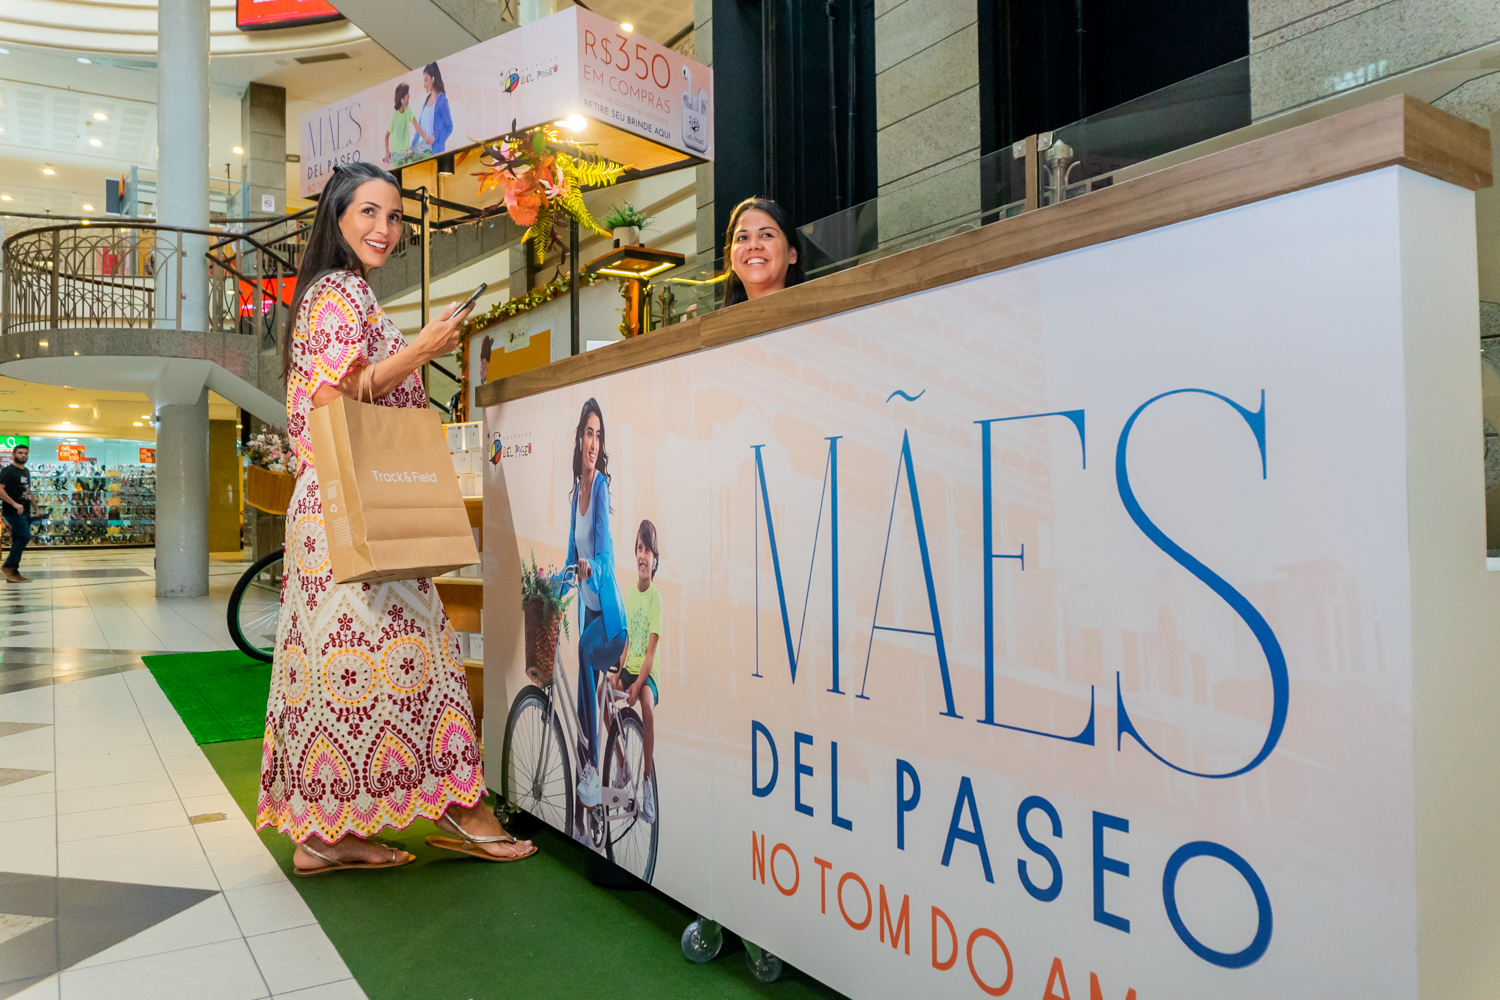 O tom do amor marca a campanha de Dia das Mães do Shopping Del Paseo